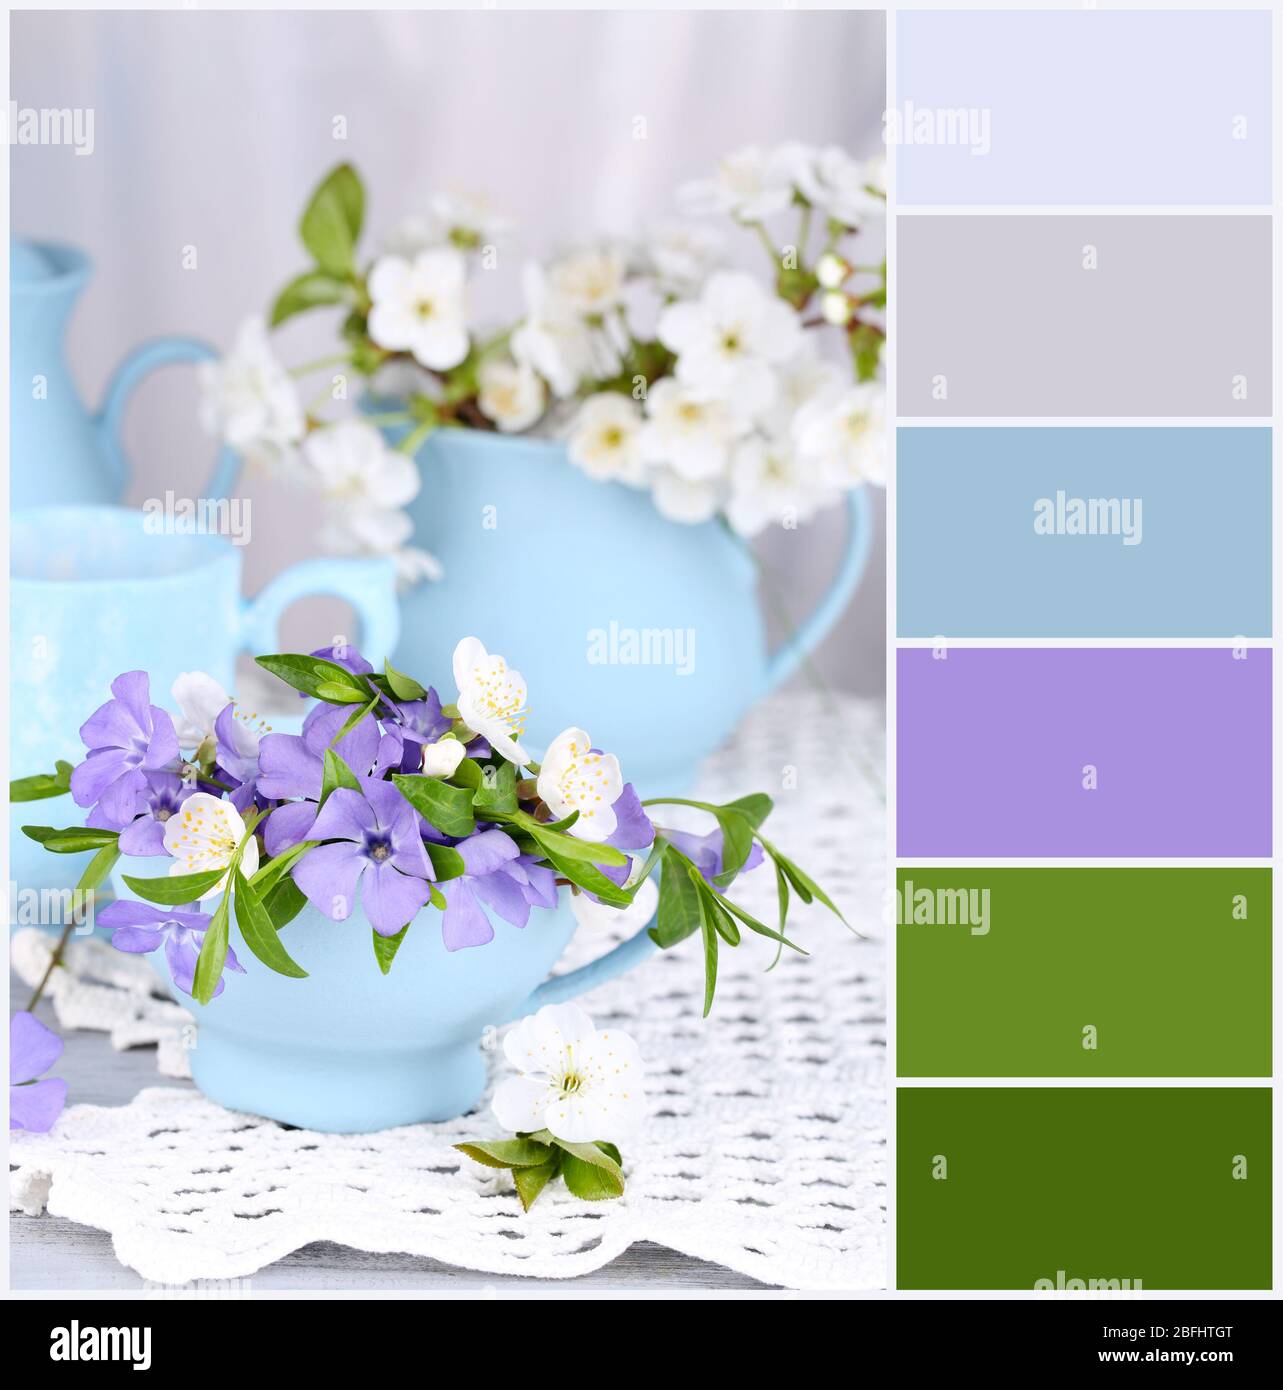 Fruhlingsblumen In Tassen Auf Dem Tisch Farbpalette Mit Kostenlosen Farbfeldern Stockfotografie Alamy